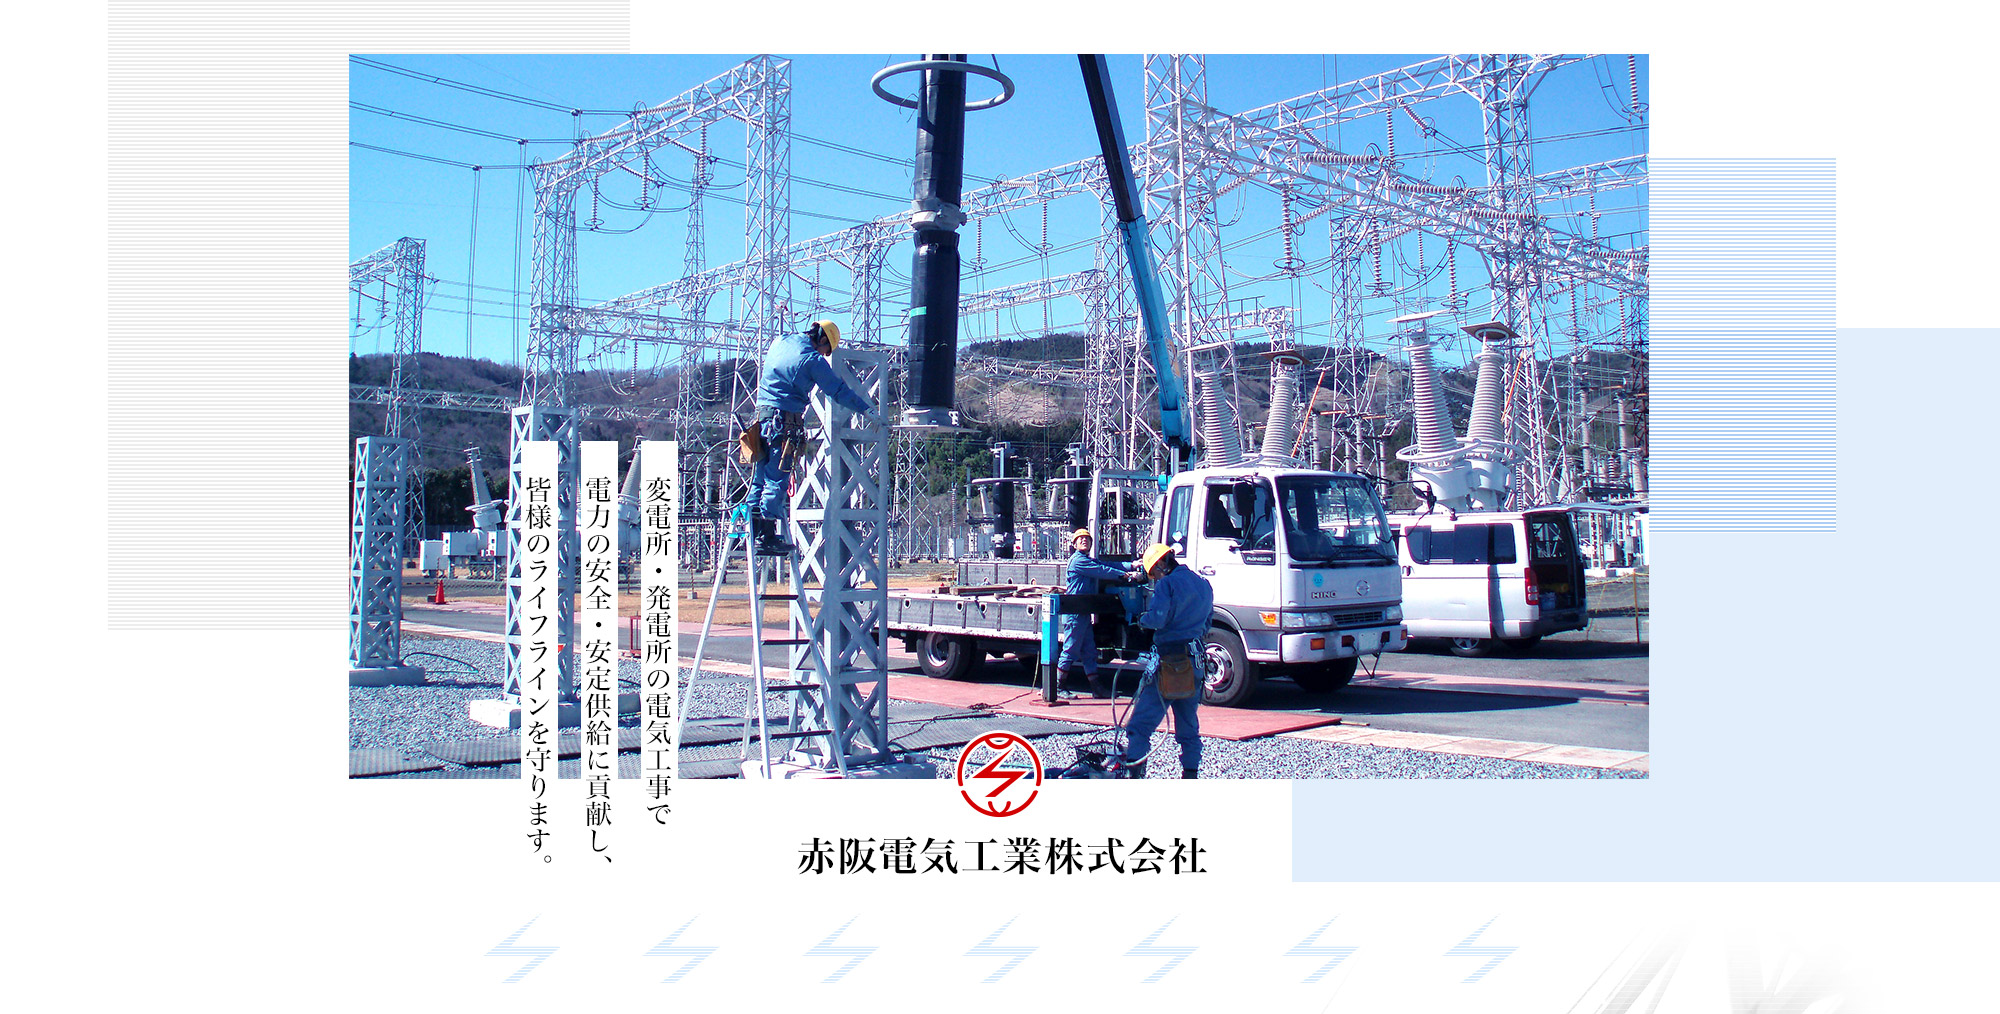 変電所・発電所の電気工事で電力の安全・安定供給に貢献し、皆様のライフラインを守ります。